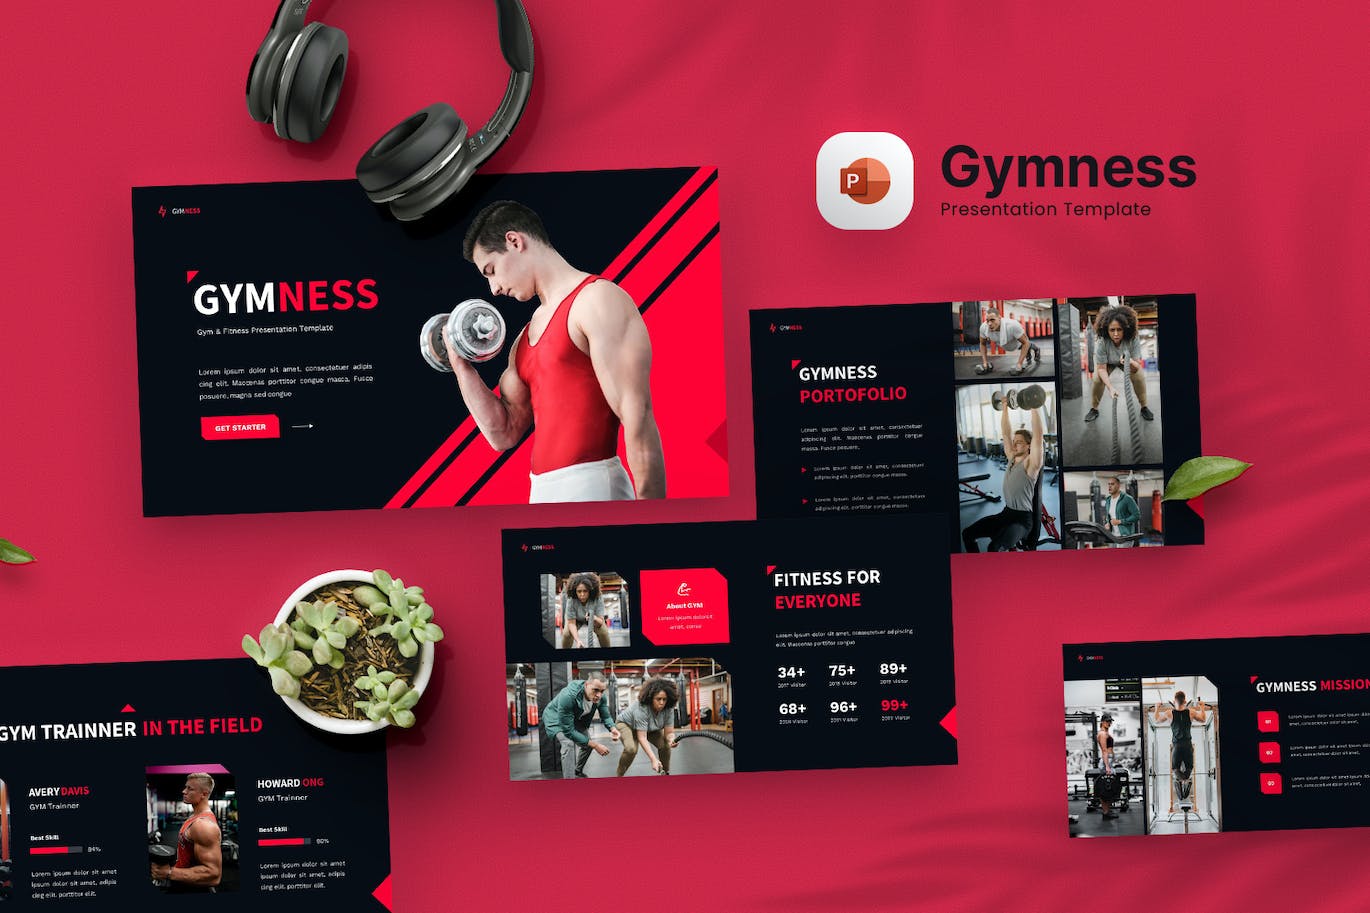 健身房和健身PPT幻灯片设计模板 Gymness – Gym & Fitness Powerpoint Template 幻灯图表 第1张